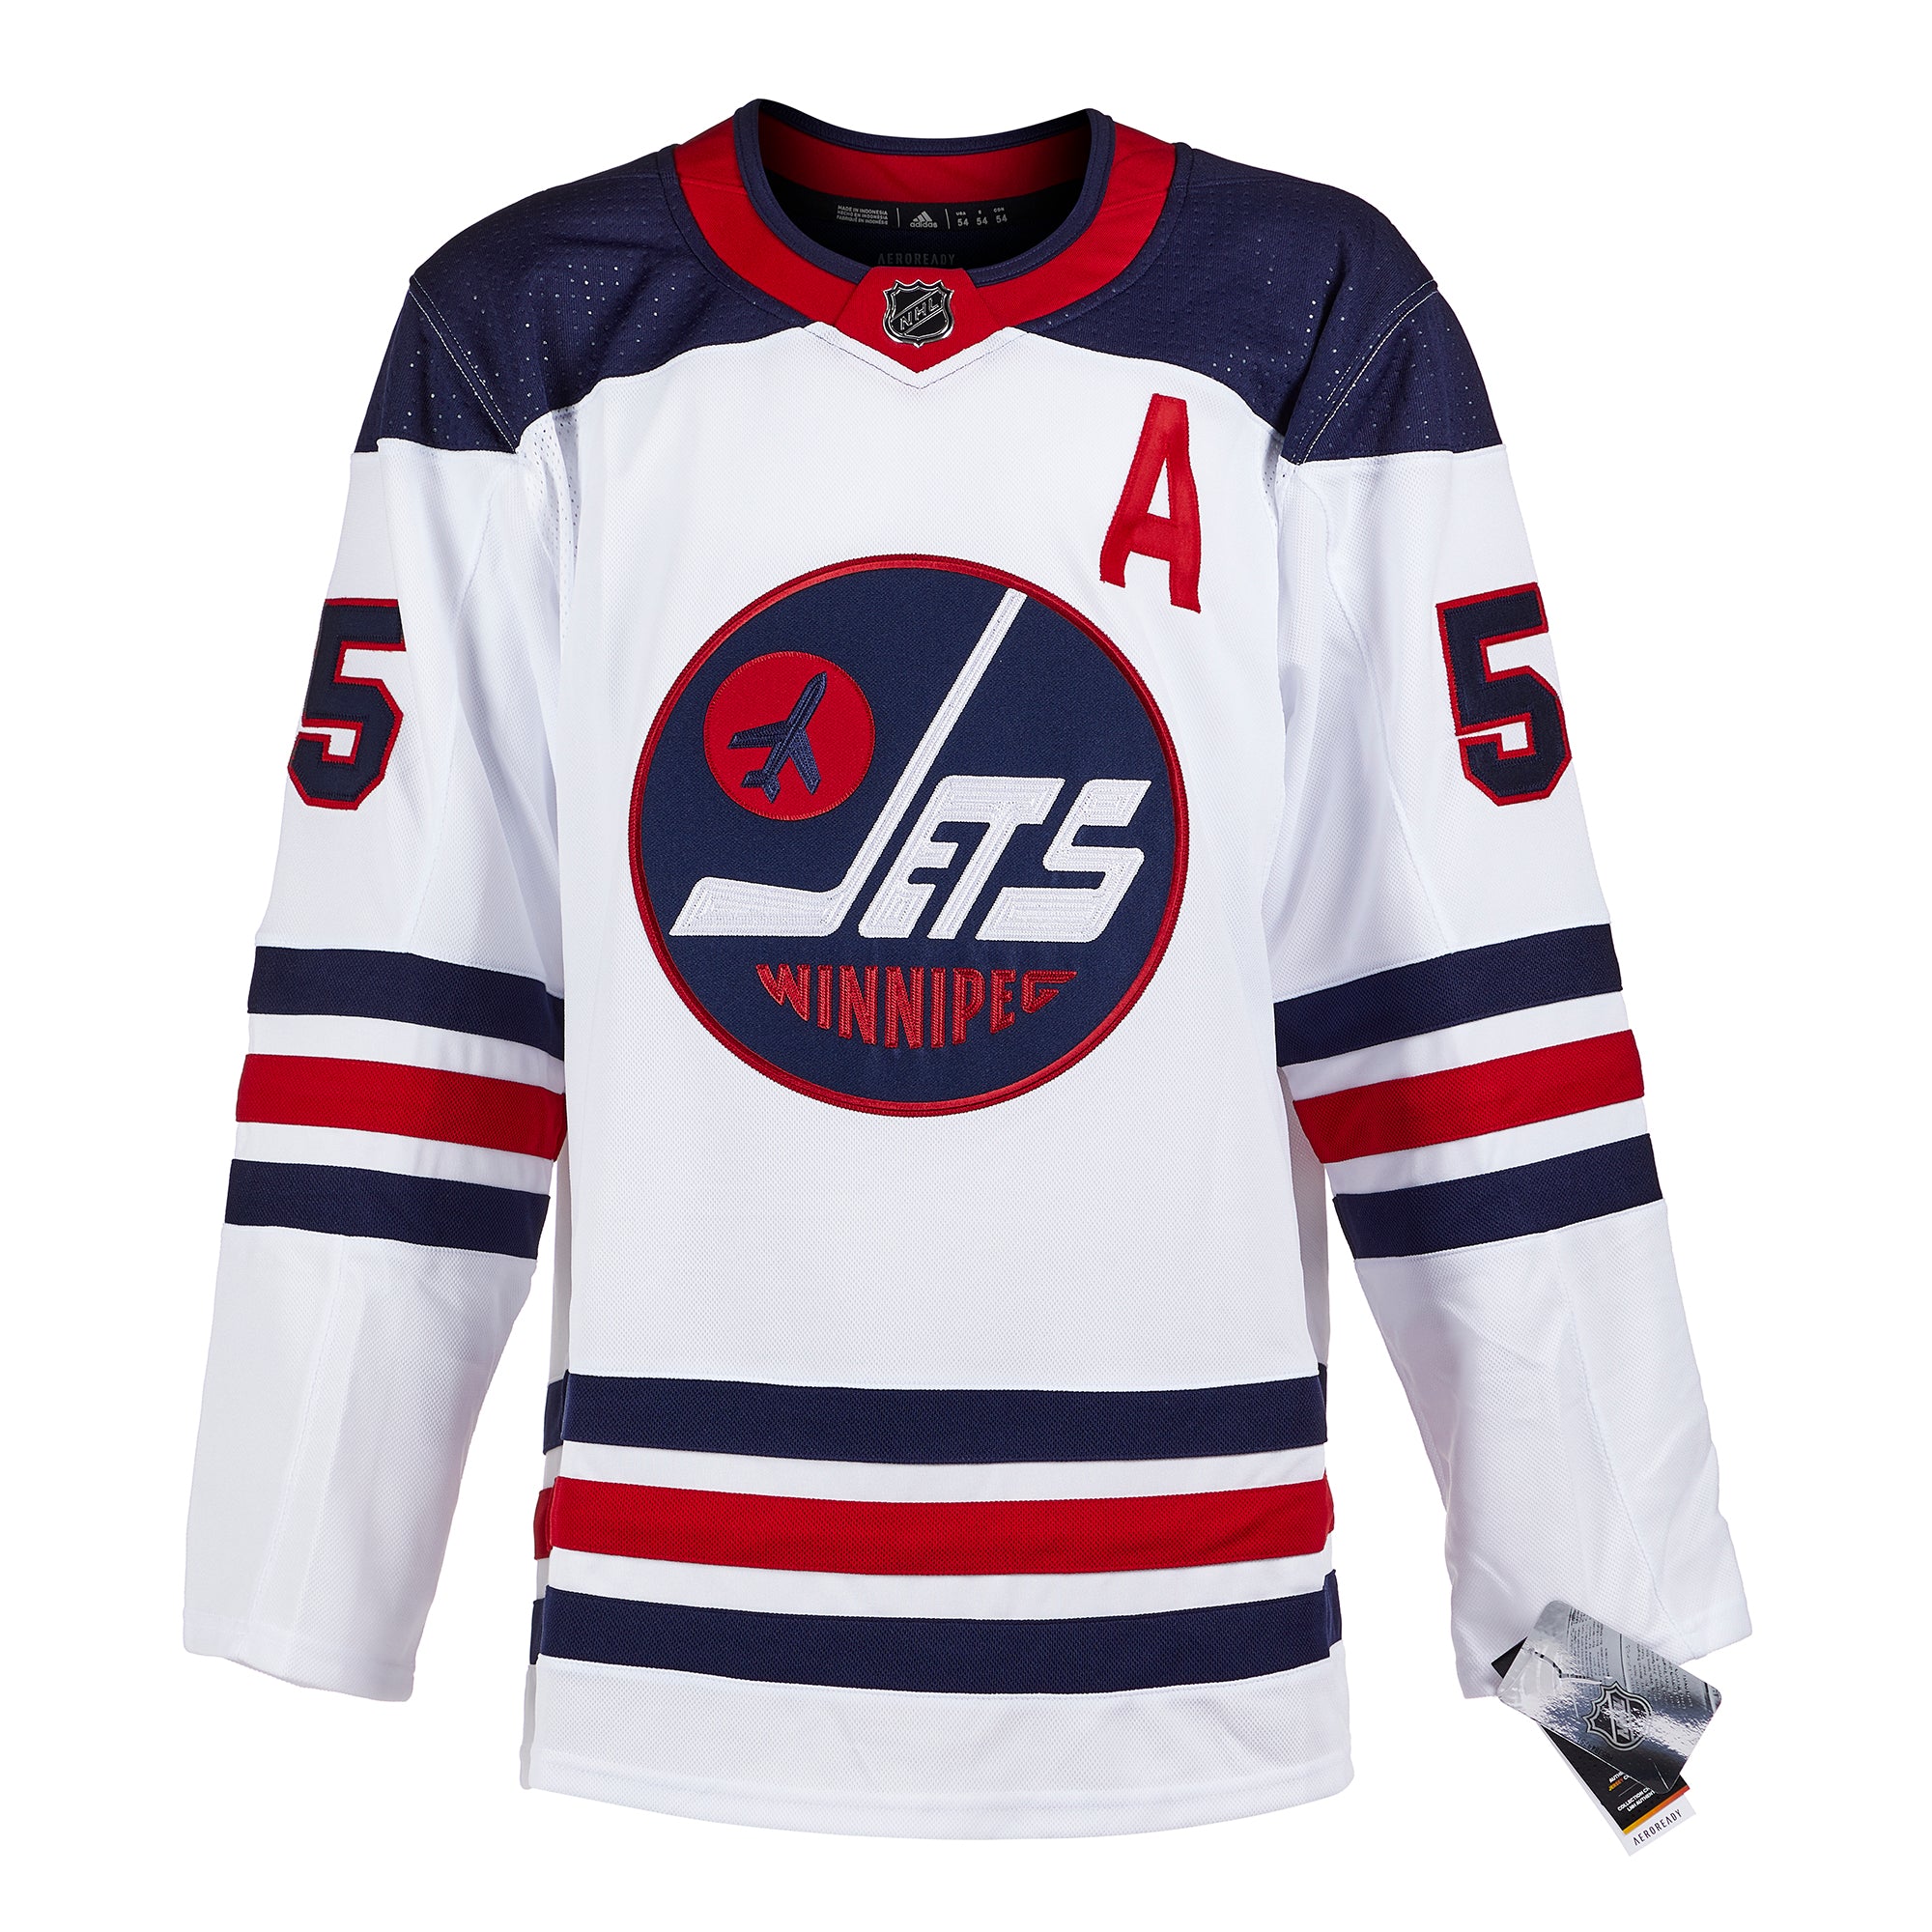 Teemu Selanne Winnipeg Jets Autographed Vintage Adidas Jersey